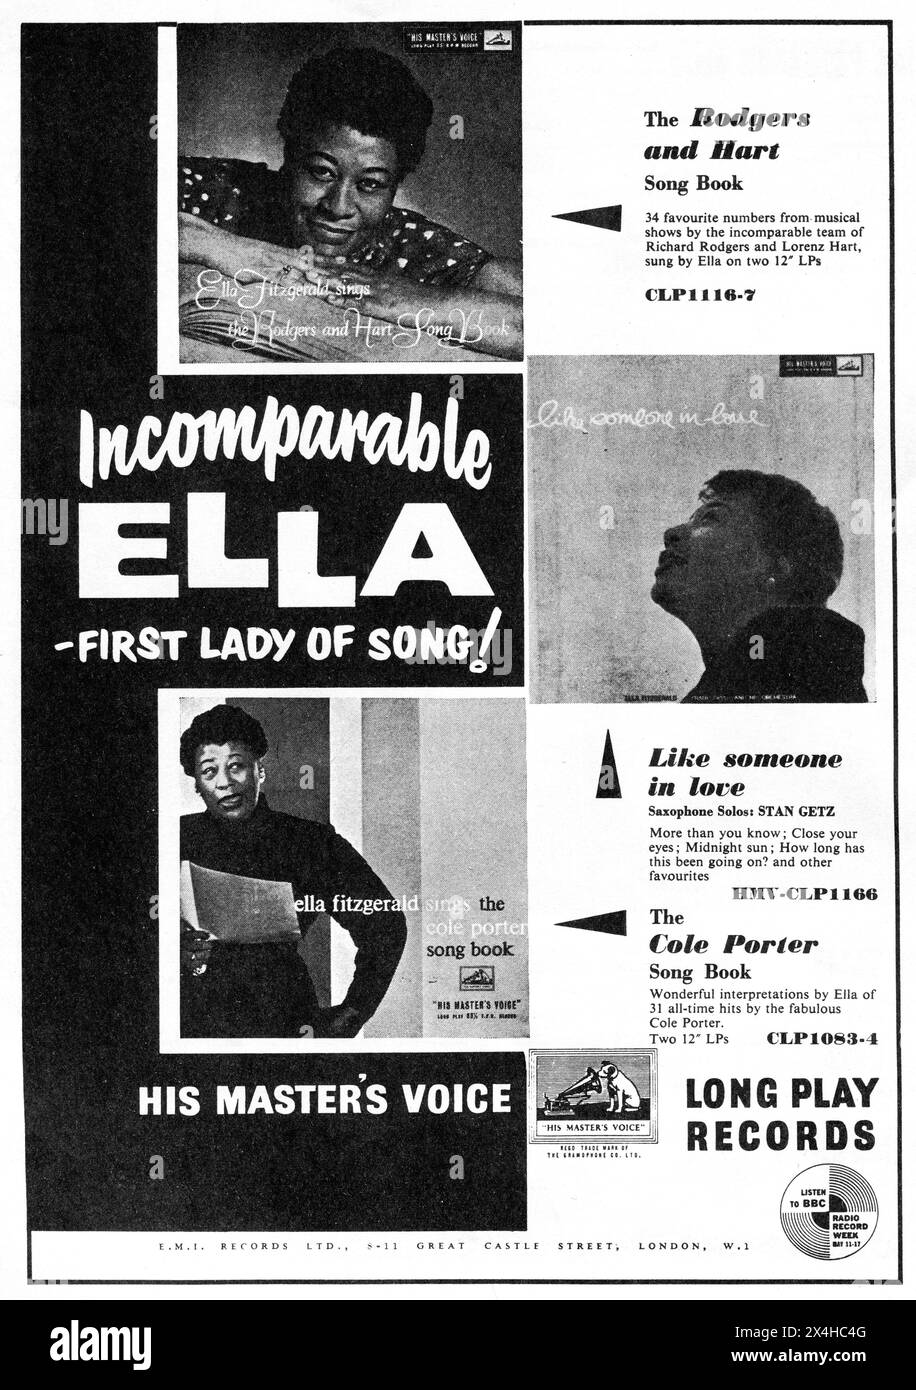 Env. 1957 : une publicité d'E.M.I. Records Ltd intitulée "Incomparable Ella - First Lady of Song!", promouvant les disques de jazz d'Ella Fitzgerald sortis sur le label "His Masters Voice". Les disques présentés sont "Ella Fitzgerald chante le livre de chansons de Rodgers & Hart", "Like Someone in Love" et "Ella Fitzgerald chante le livre de chansons de Cole porter". Banque D'Images